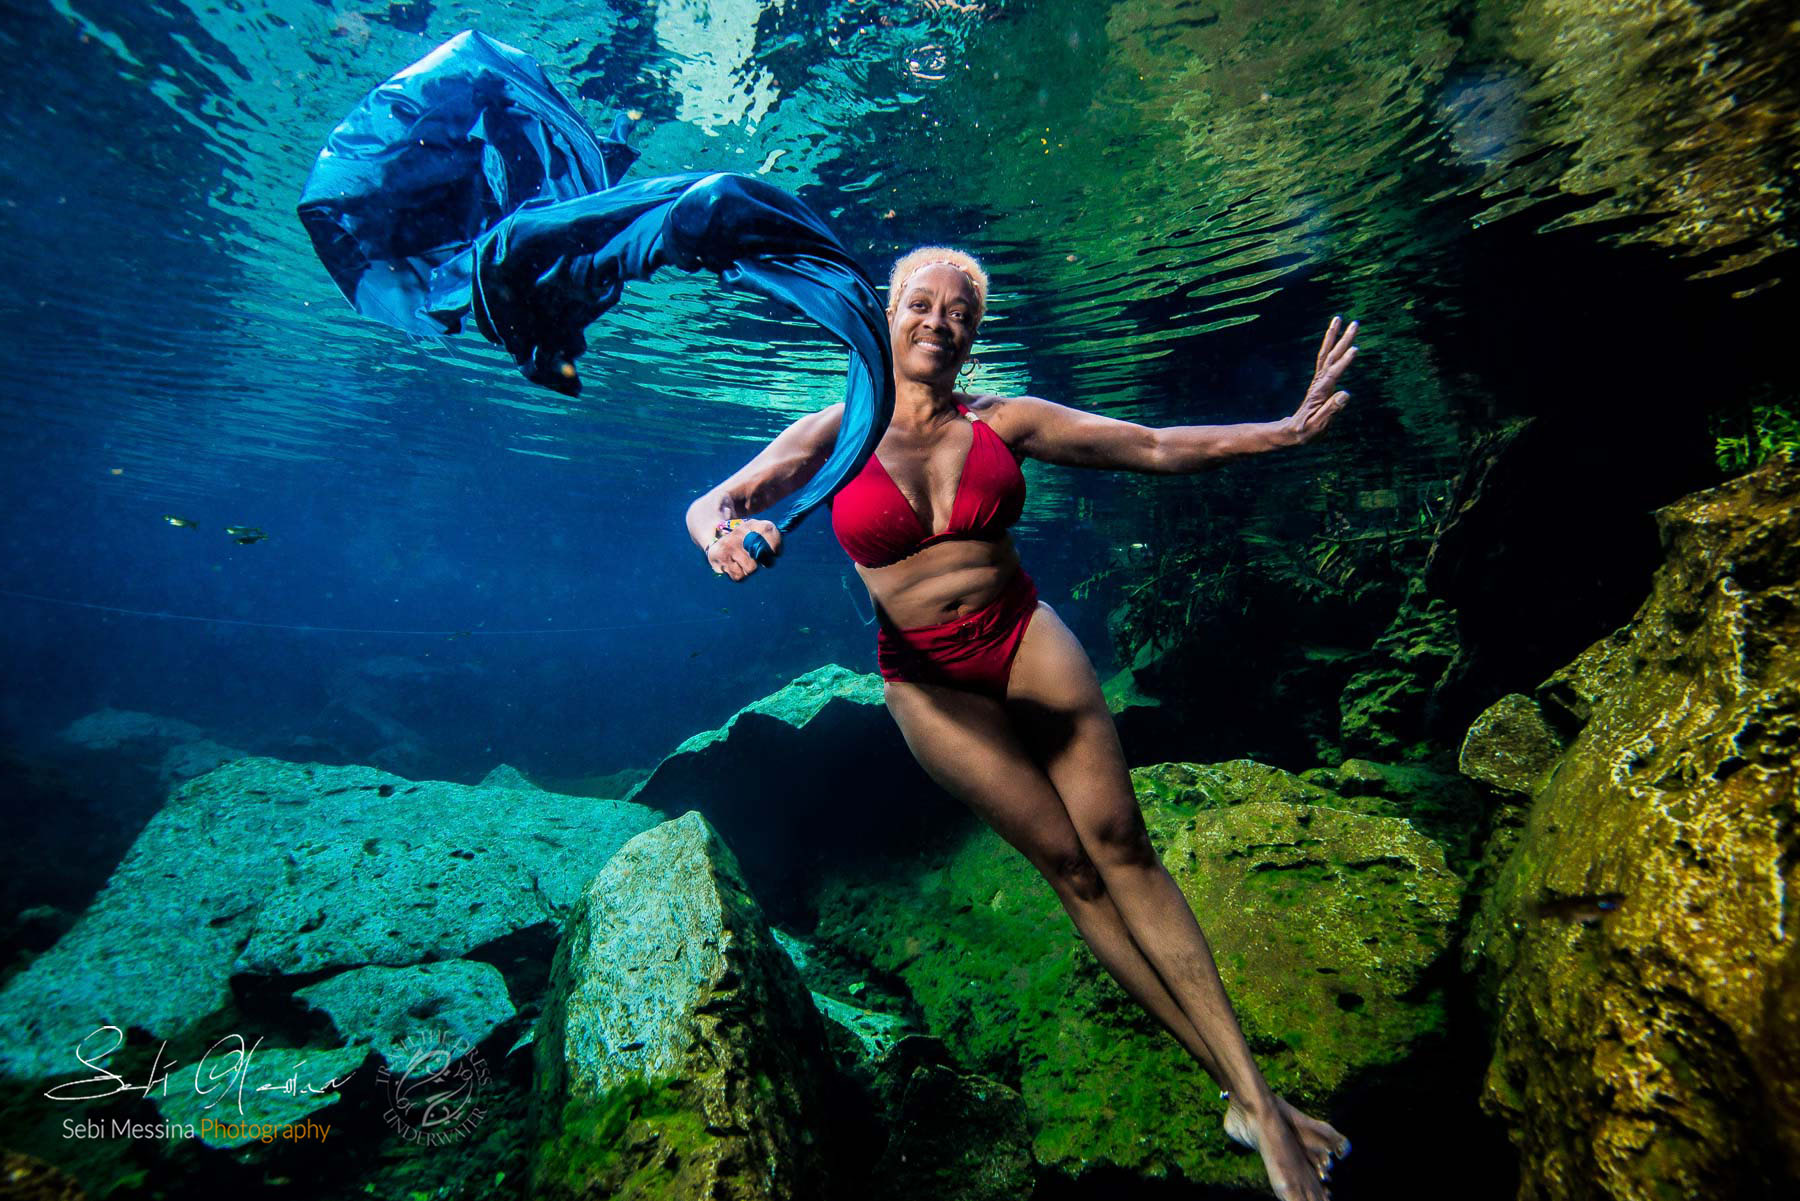 Waheedah - Cenote Underwater Modelling Underwater Photographer Tulum - Sebi Messina Photography